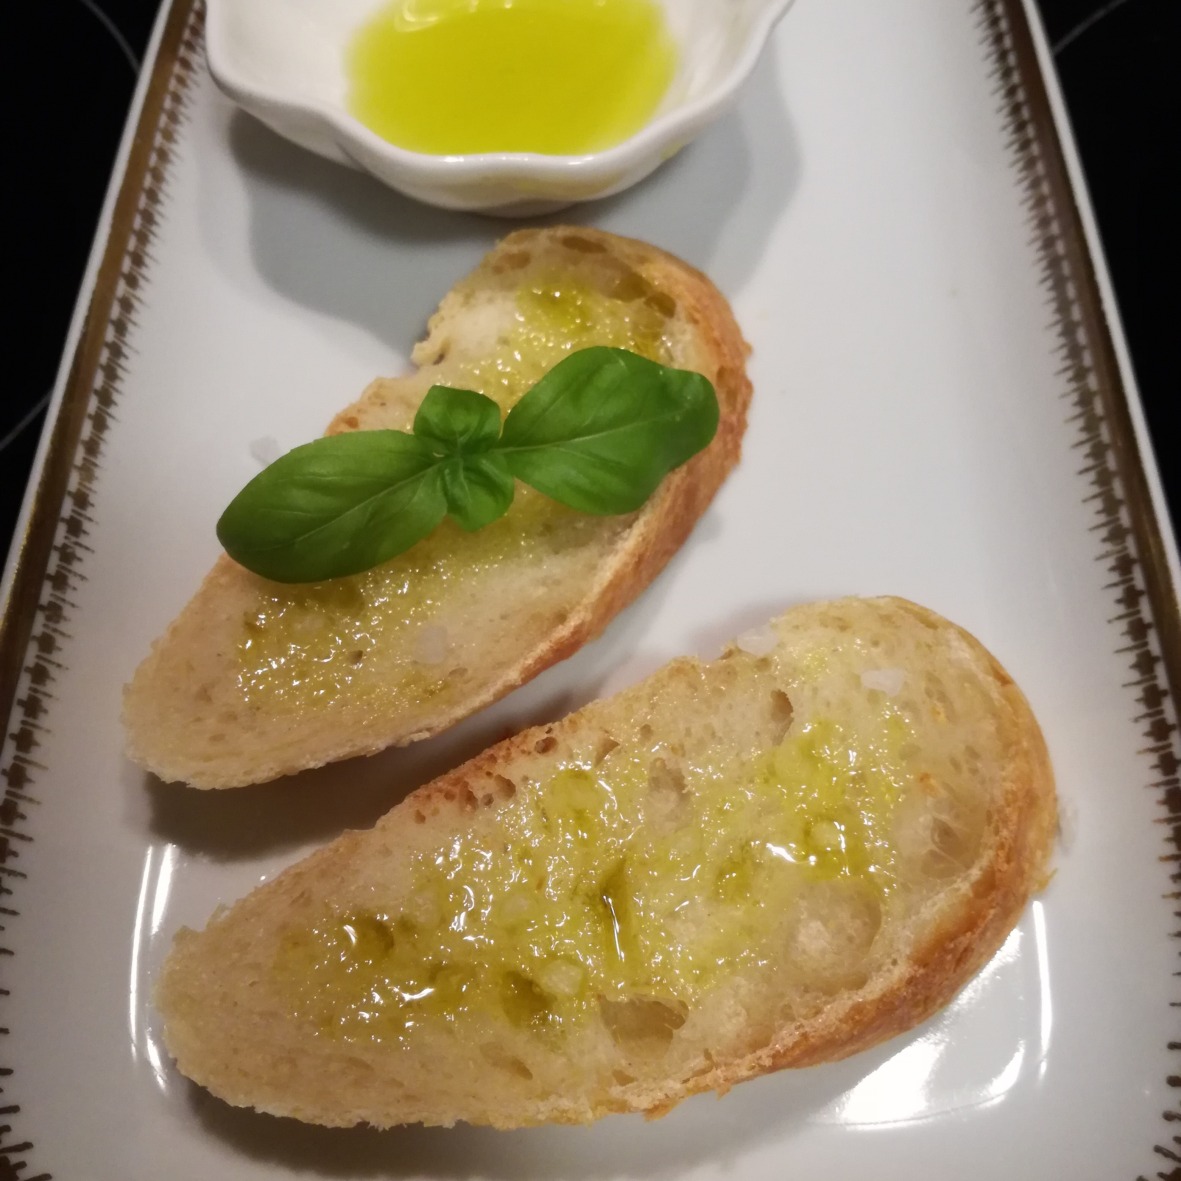 Das gelbe Gold des Südens... Olivenöl aus Sizilien - Hallo Sizilien